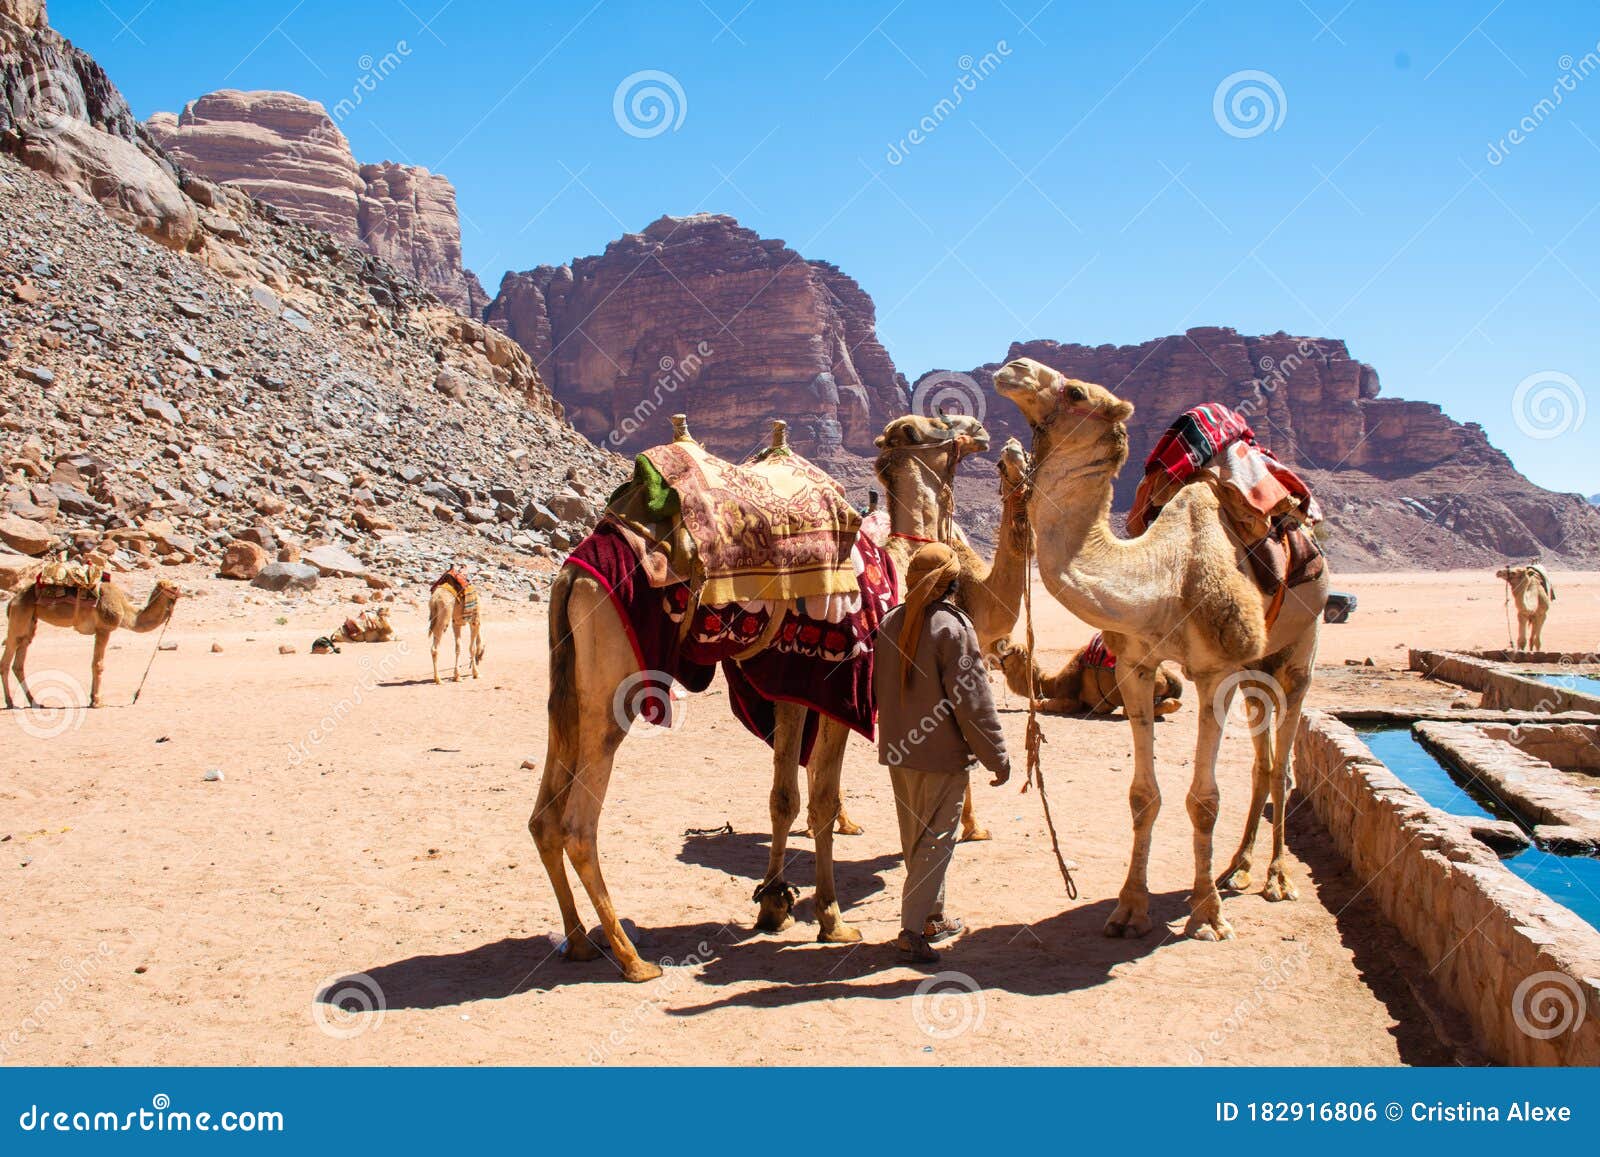 amman desert